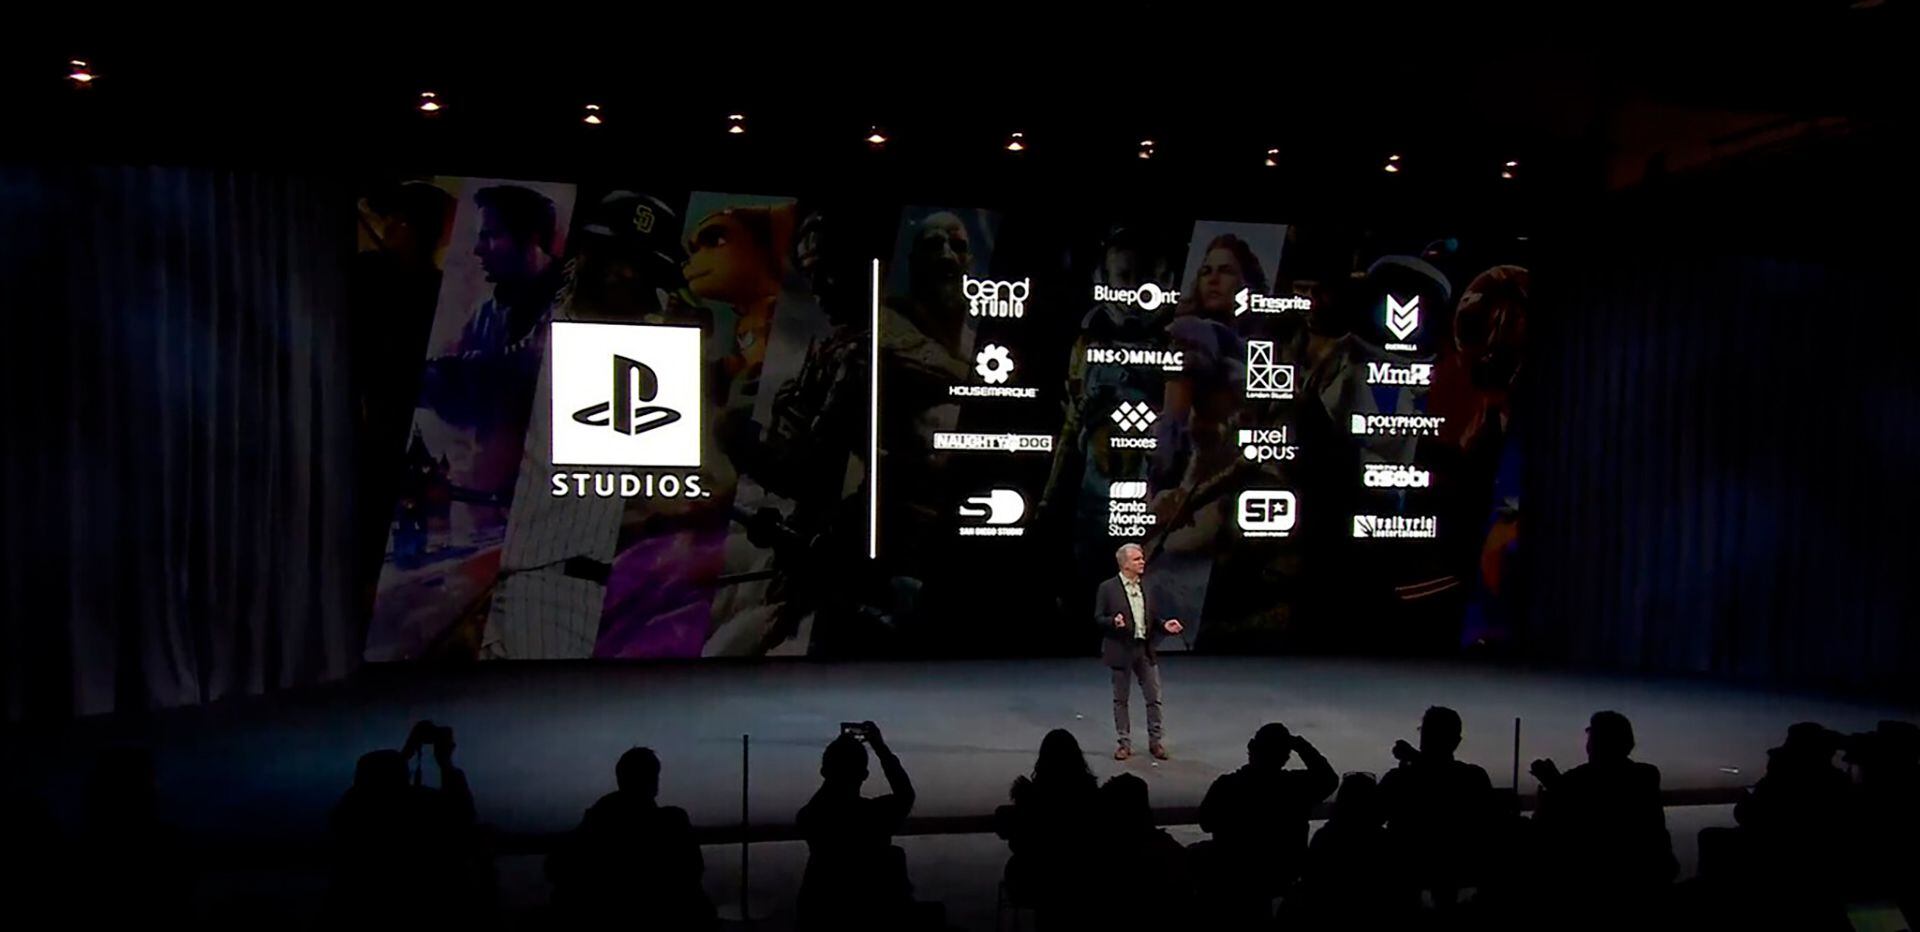 PS5: Sony pretende lançar 10 jogos multiplayer até 2026 - Olhar